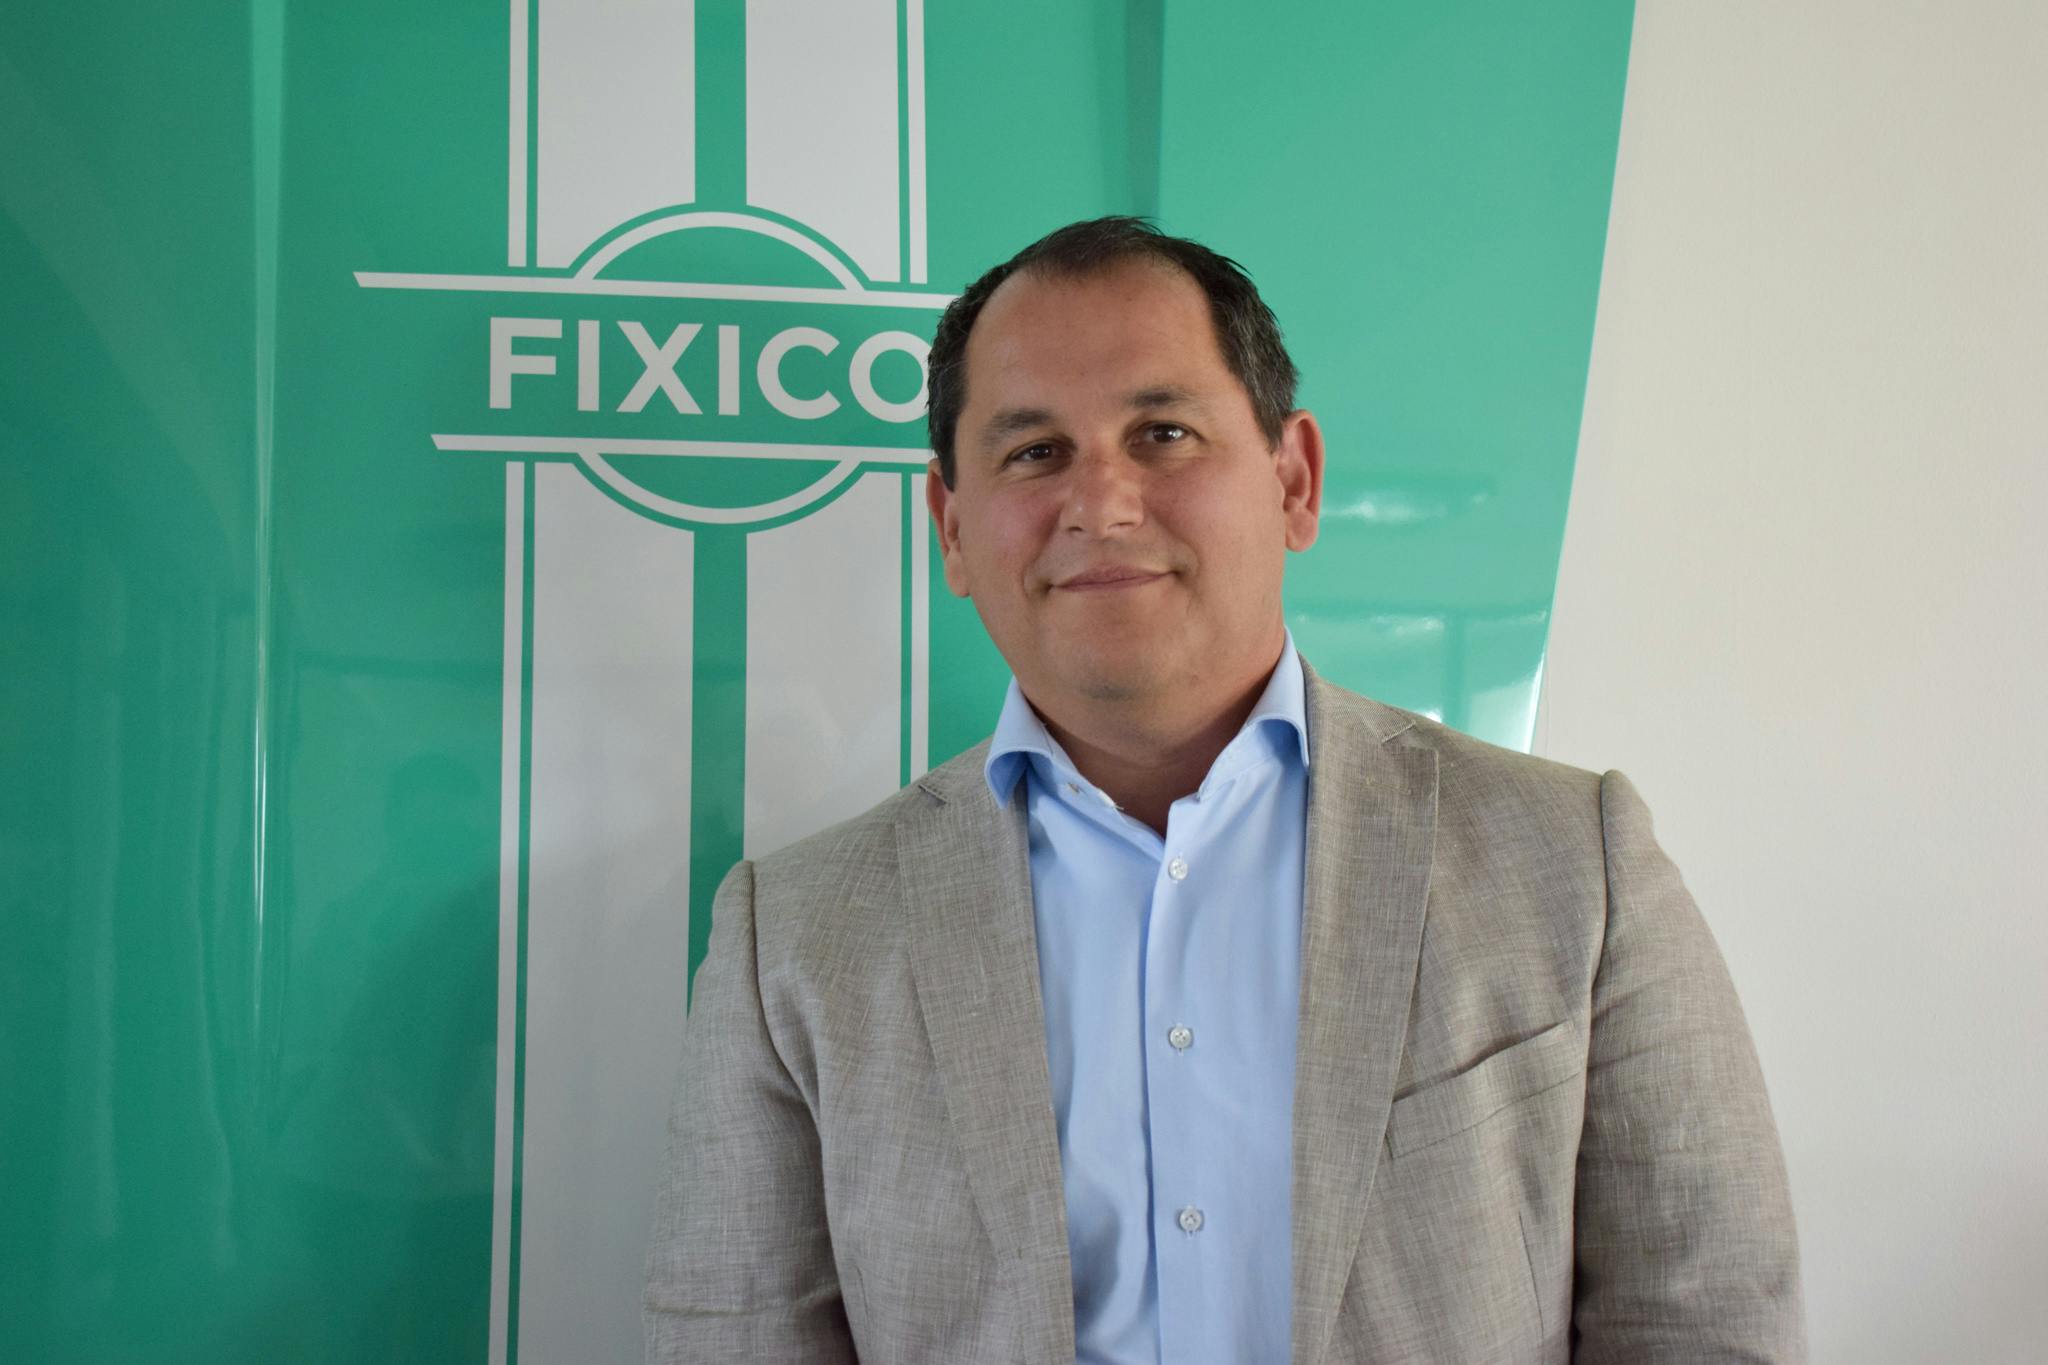 Fixico stellt Frans Ditmer als neuen CCO vor